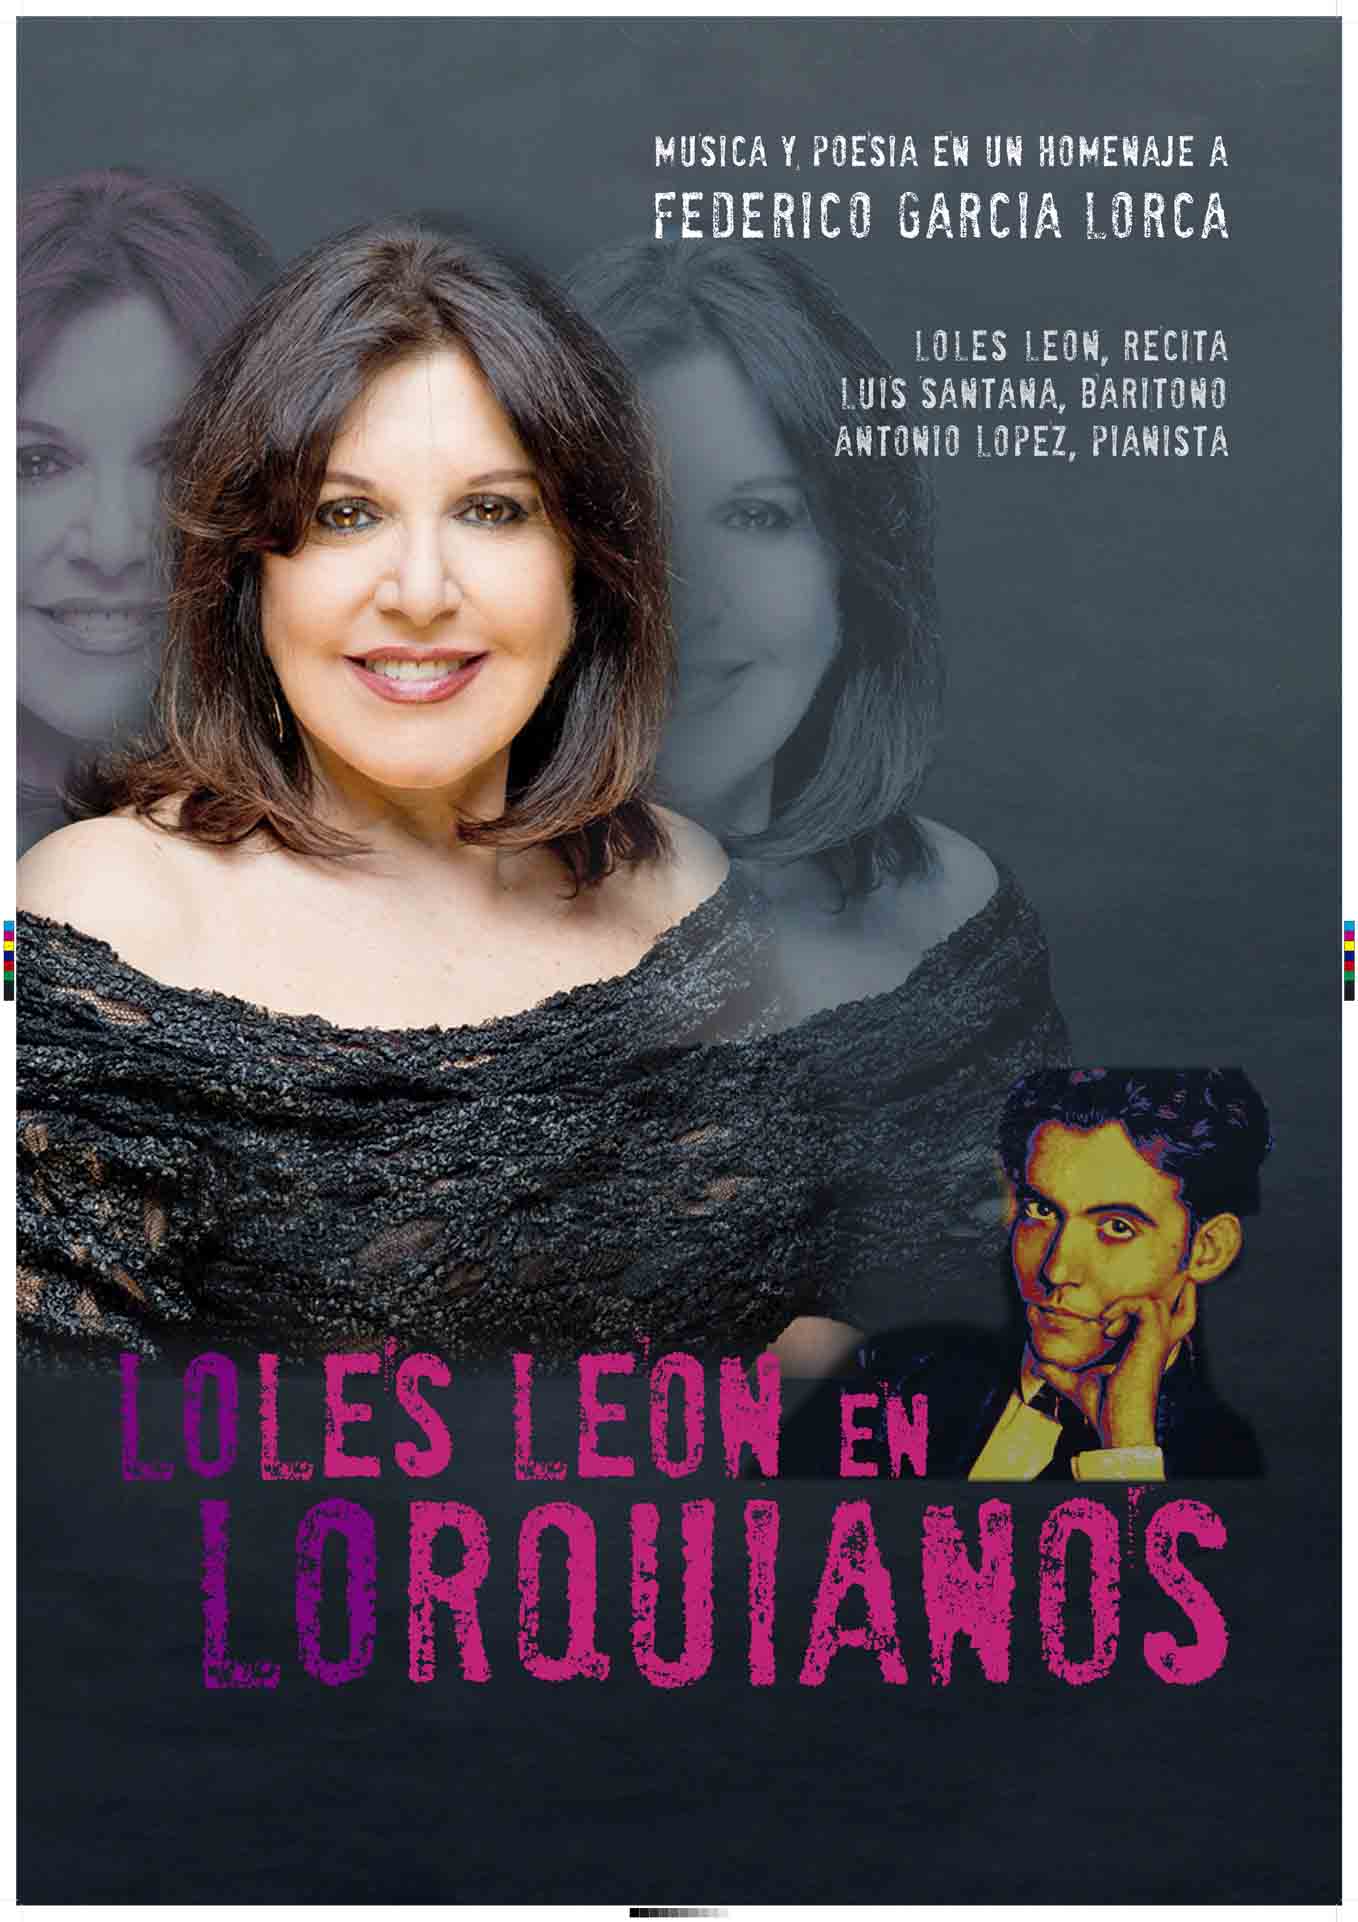 18 de enero: Loles León en Lorquianos